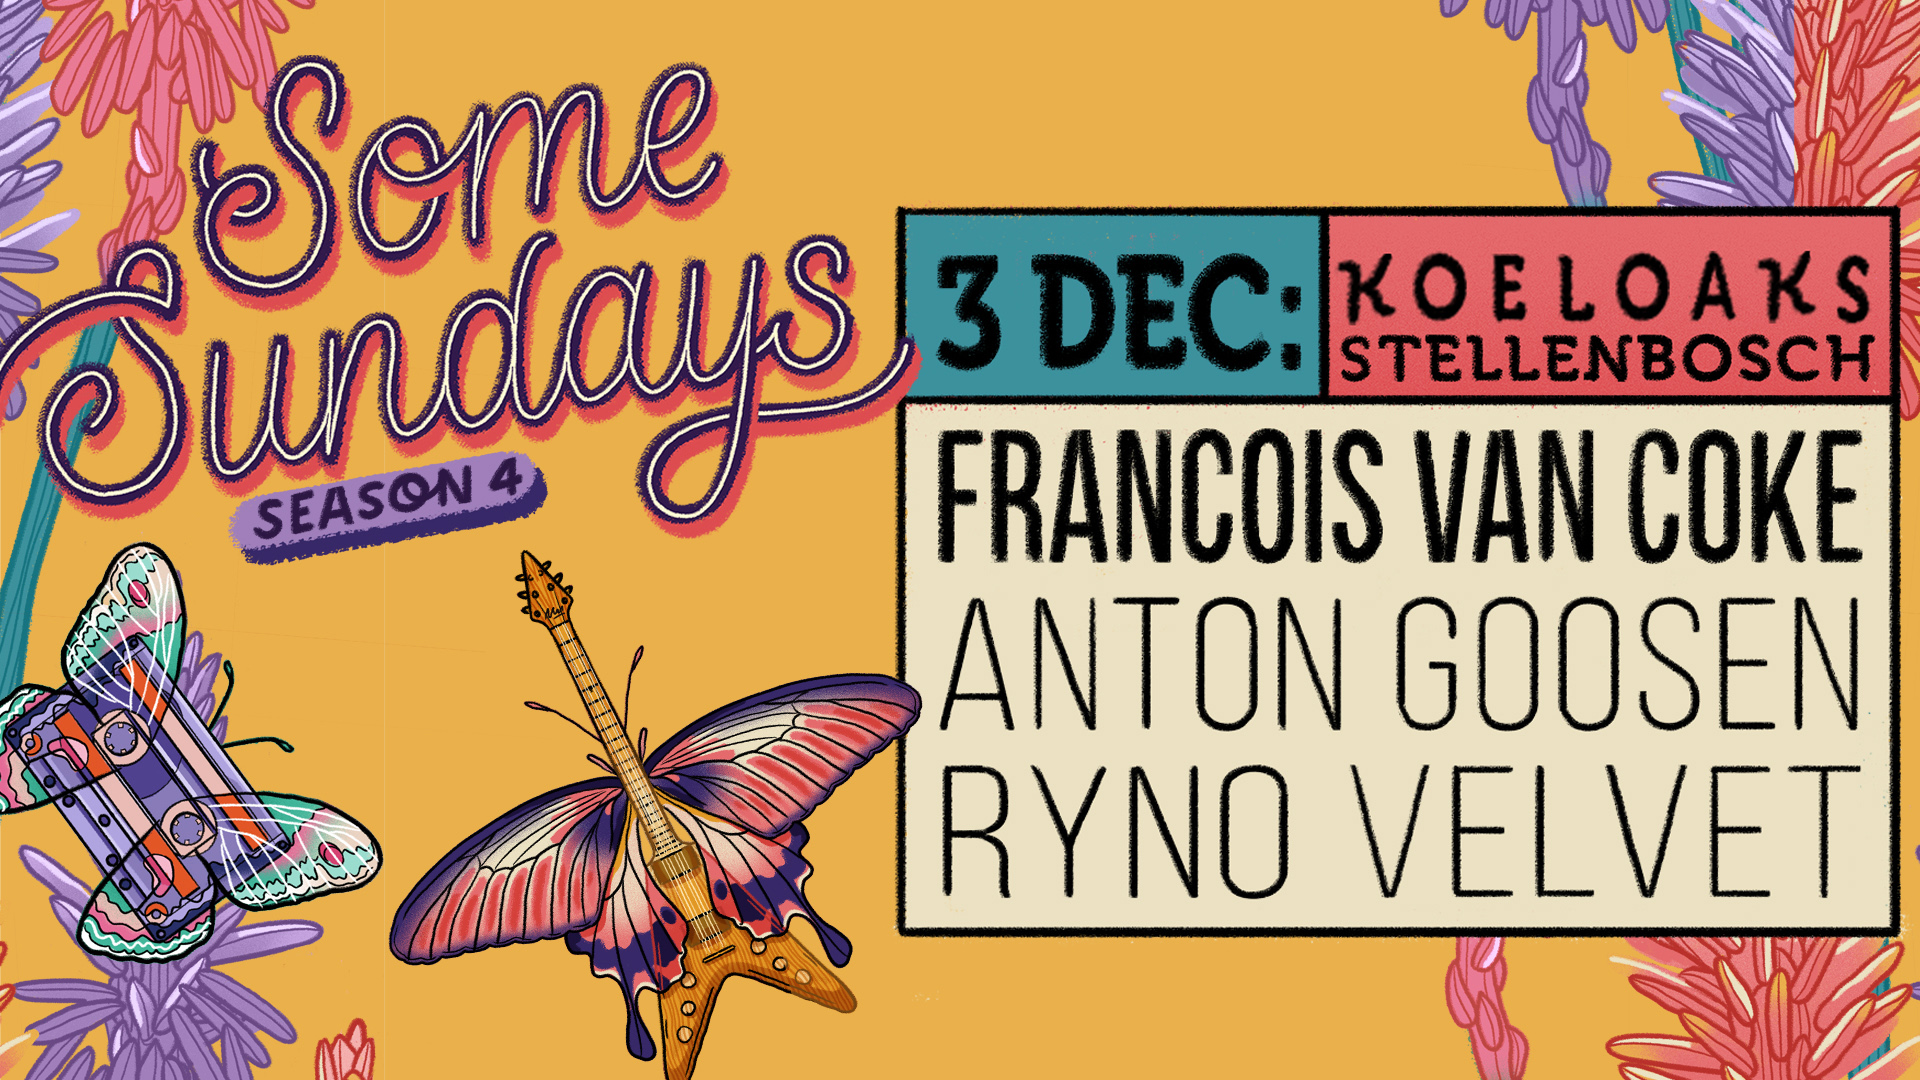 Some Sundays: Francois van Coke, Anton Goosen, Ryno Velvet